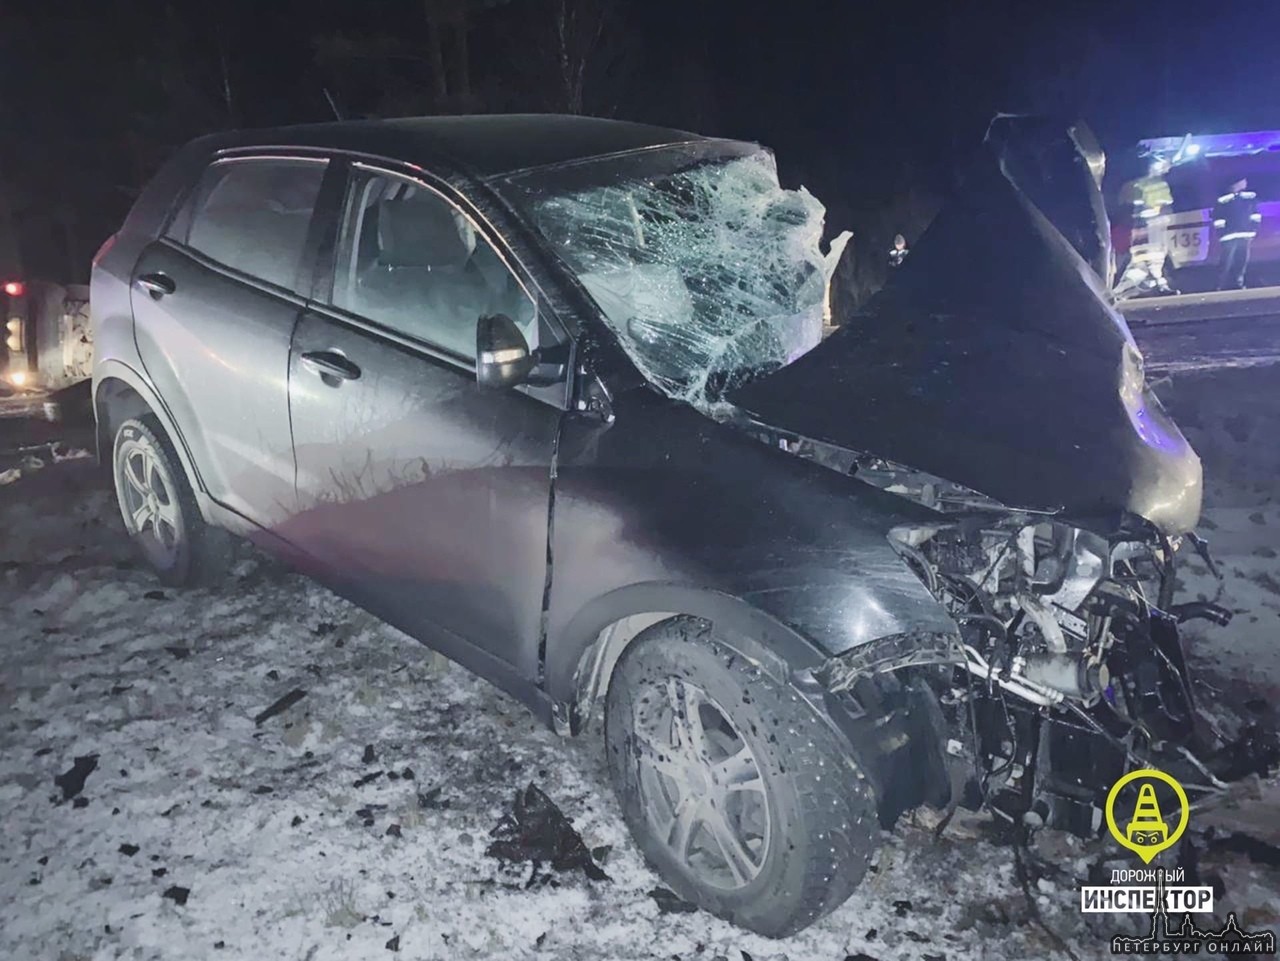 1 февраля около 7 часов утра на 137 км. автодороги «СПб - Псков» столкнулись два автомобиля: Land Ro...